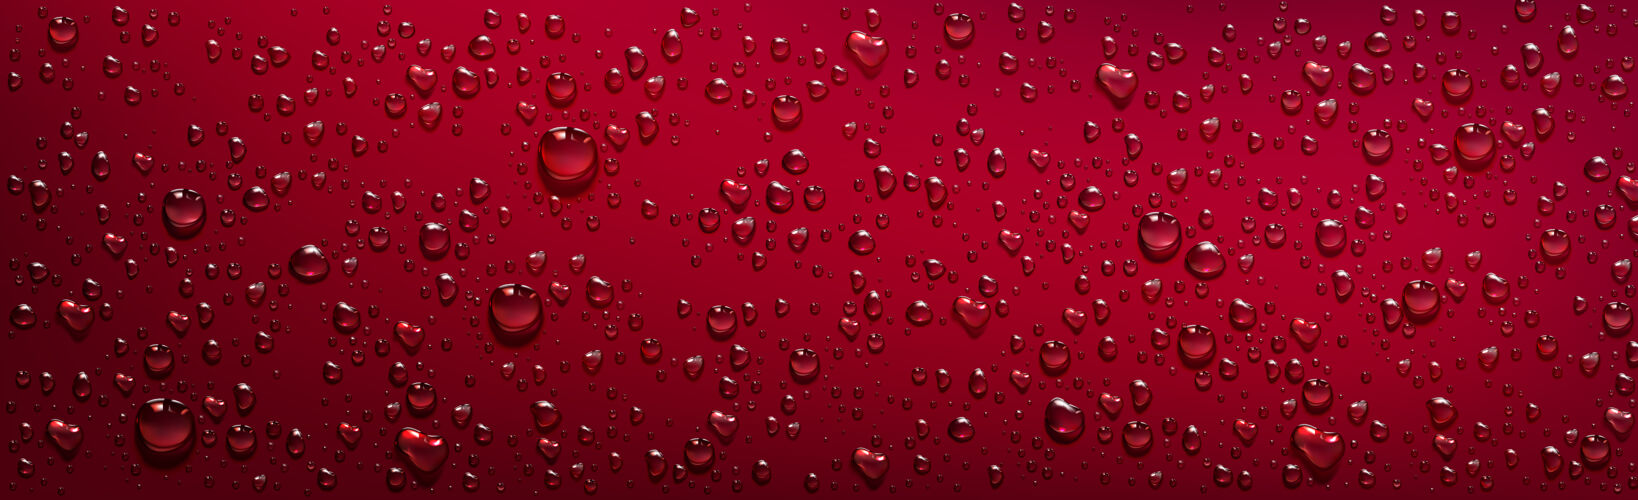 蒸汽红色背景 透明水滴气泡飞溅凝结